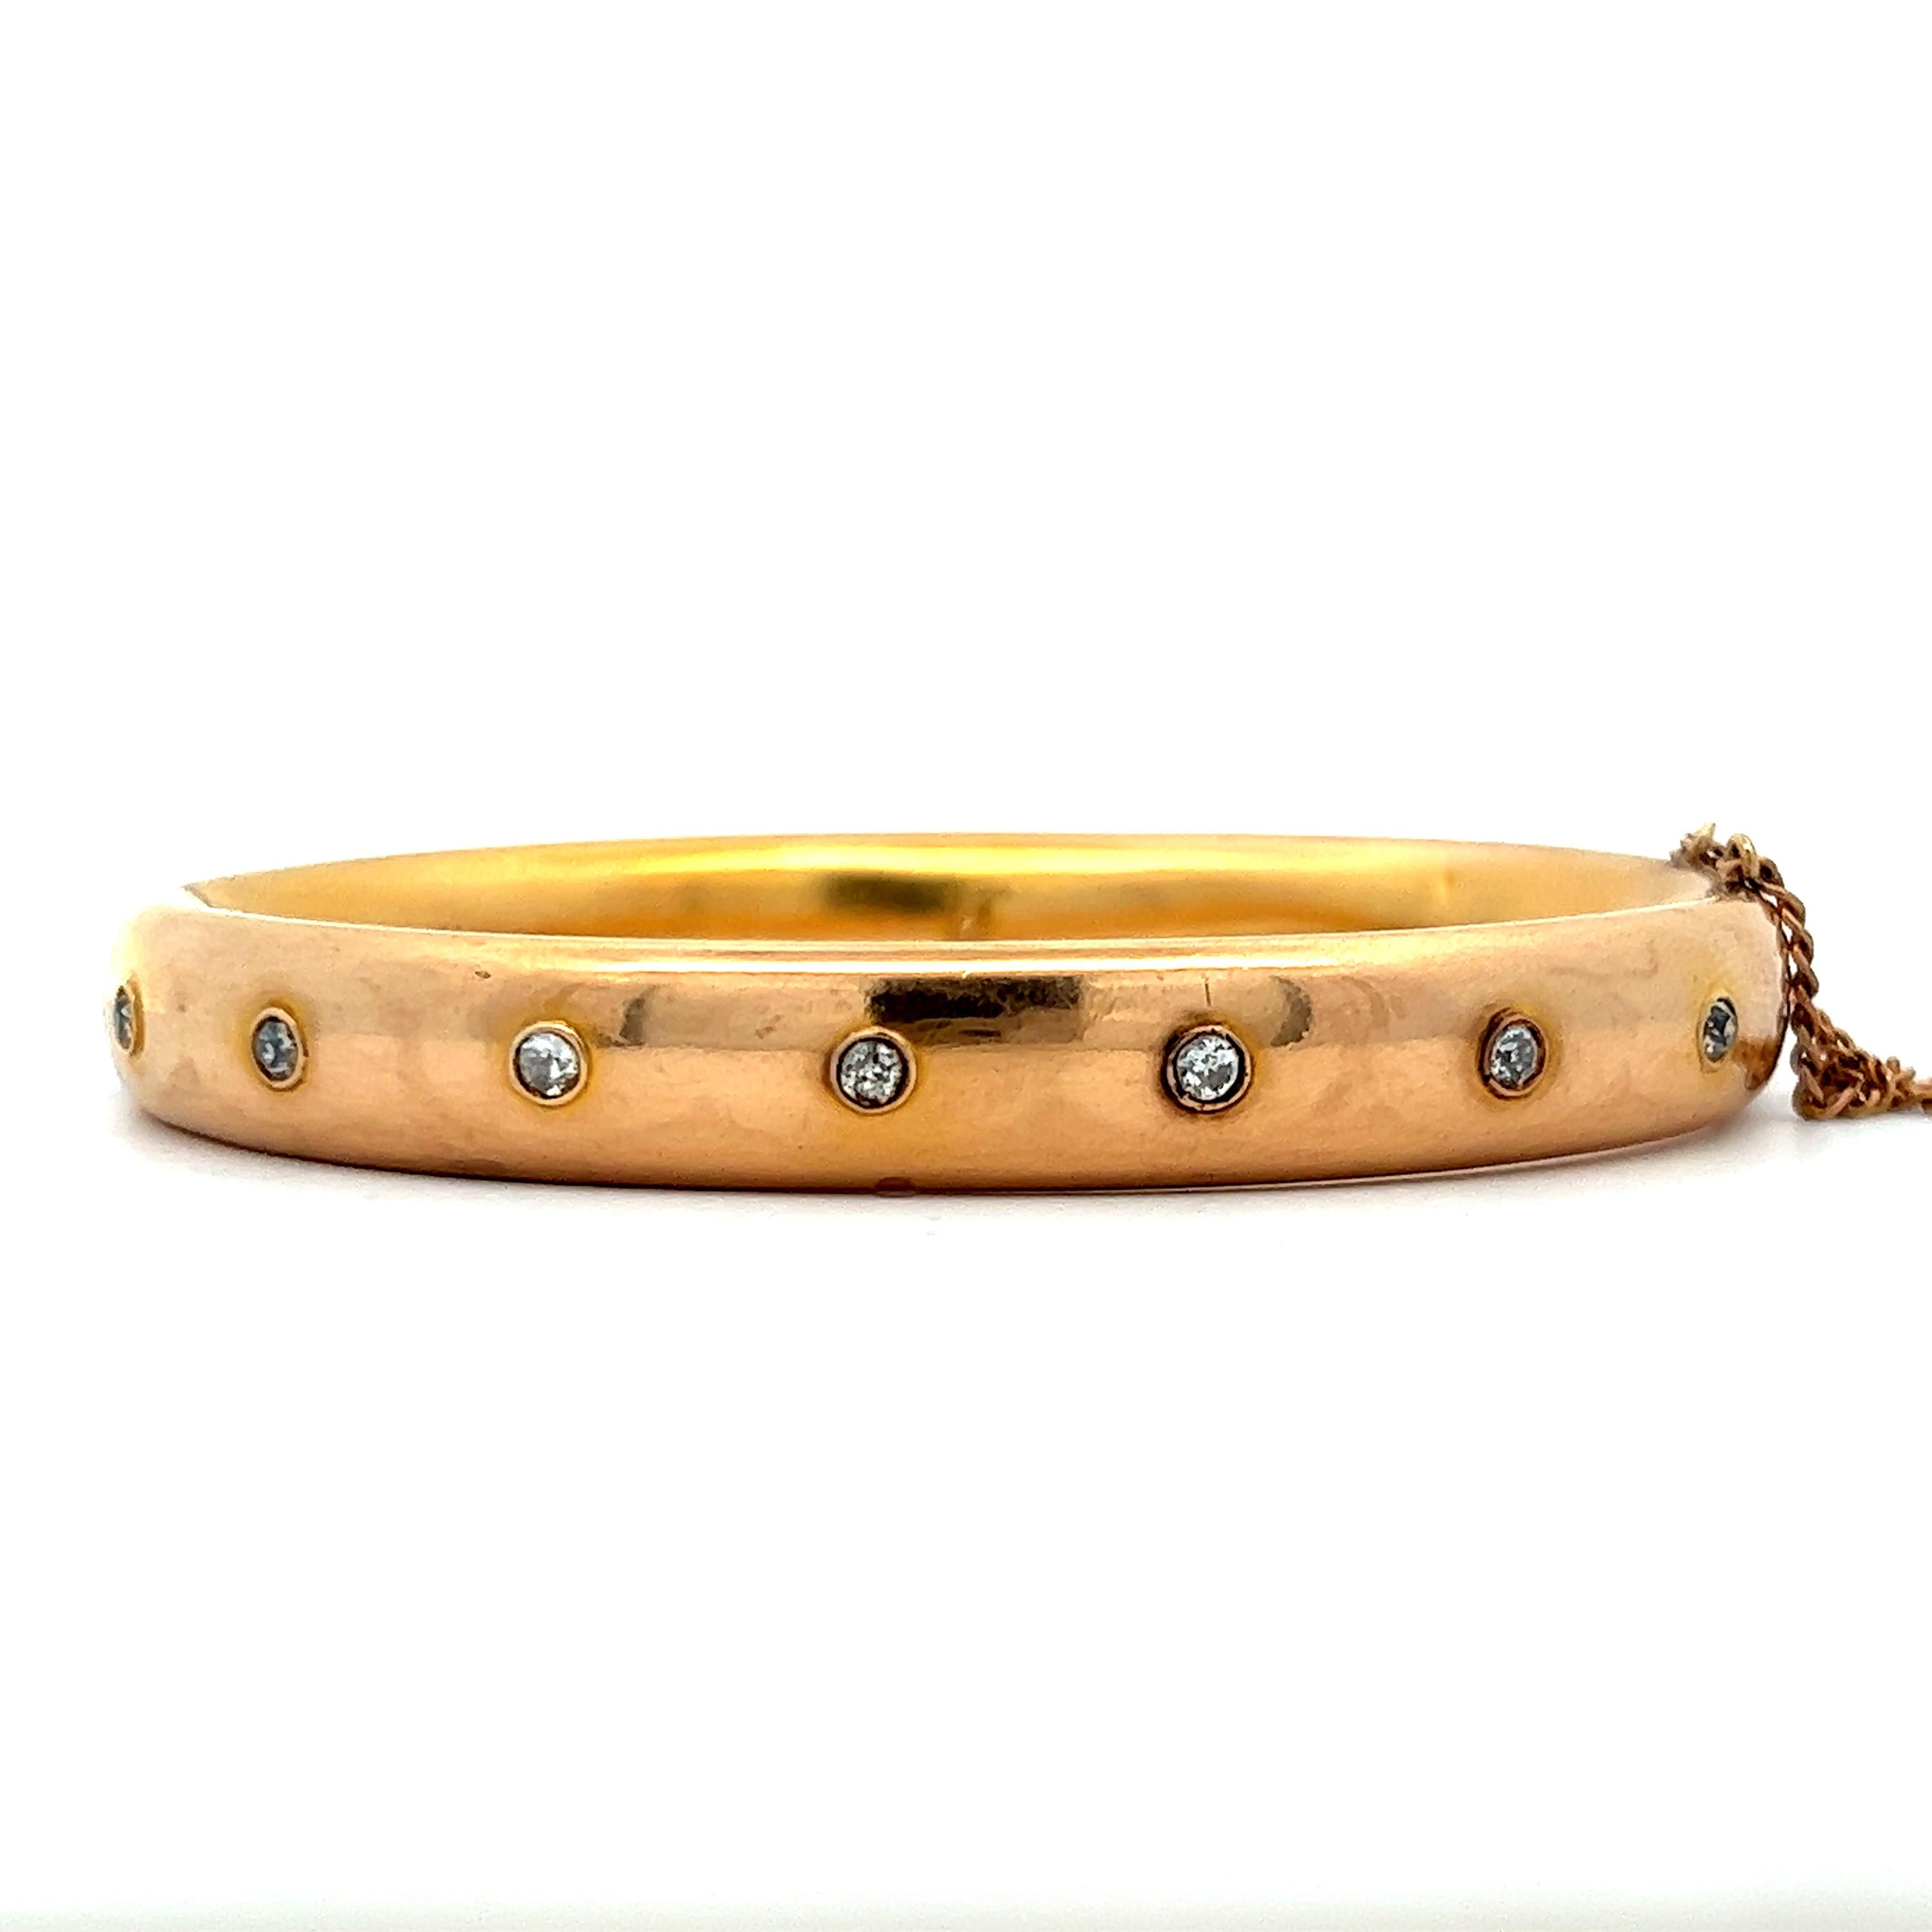 Ce superbe bracelet victorien est réalisé en or jaune 14k avec des diamants. Le bracelet présente un design de bangle à charnière avec un fermoir et une chaîne pour assurer un ajustement sûr et confortable. Le bracelet est serti de diamants de 0,5